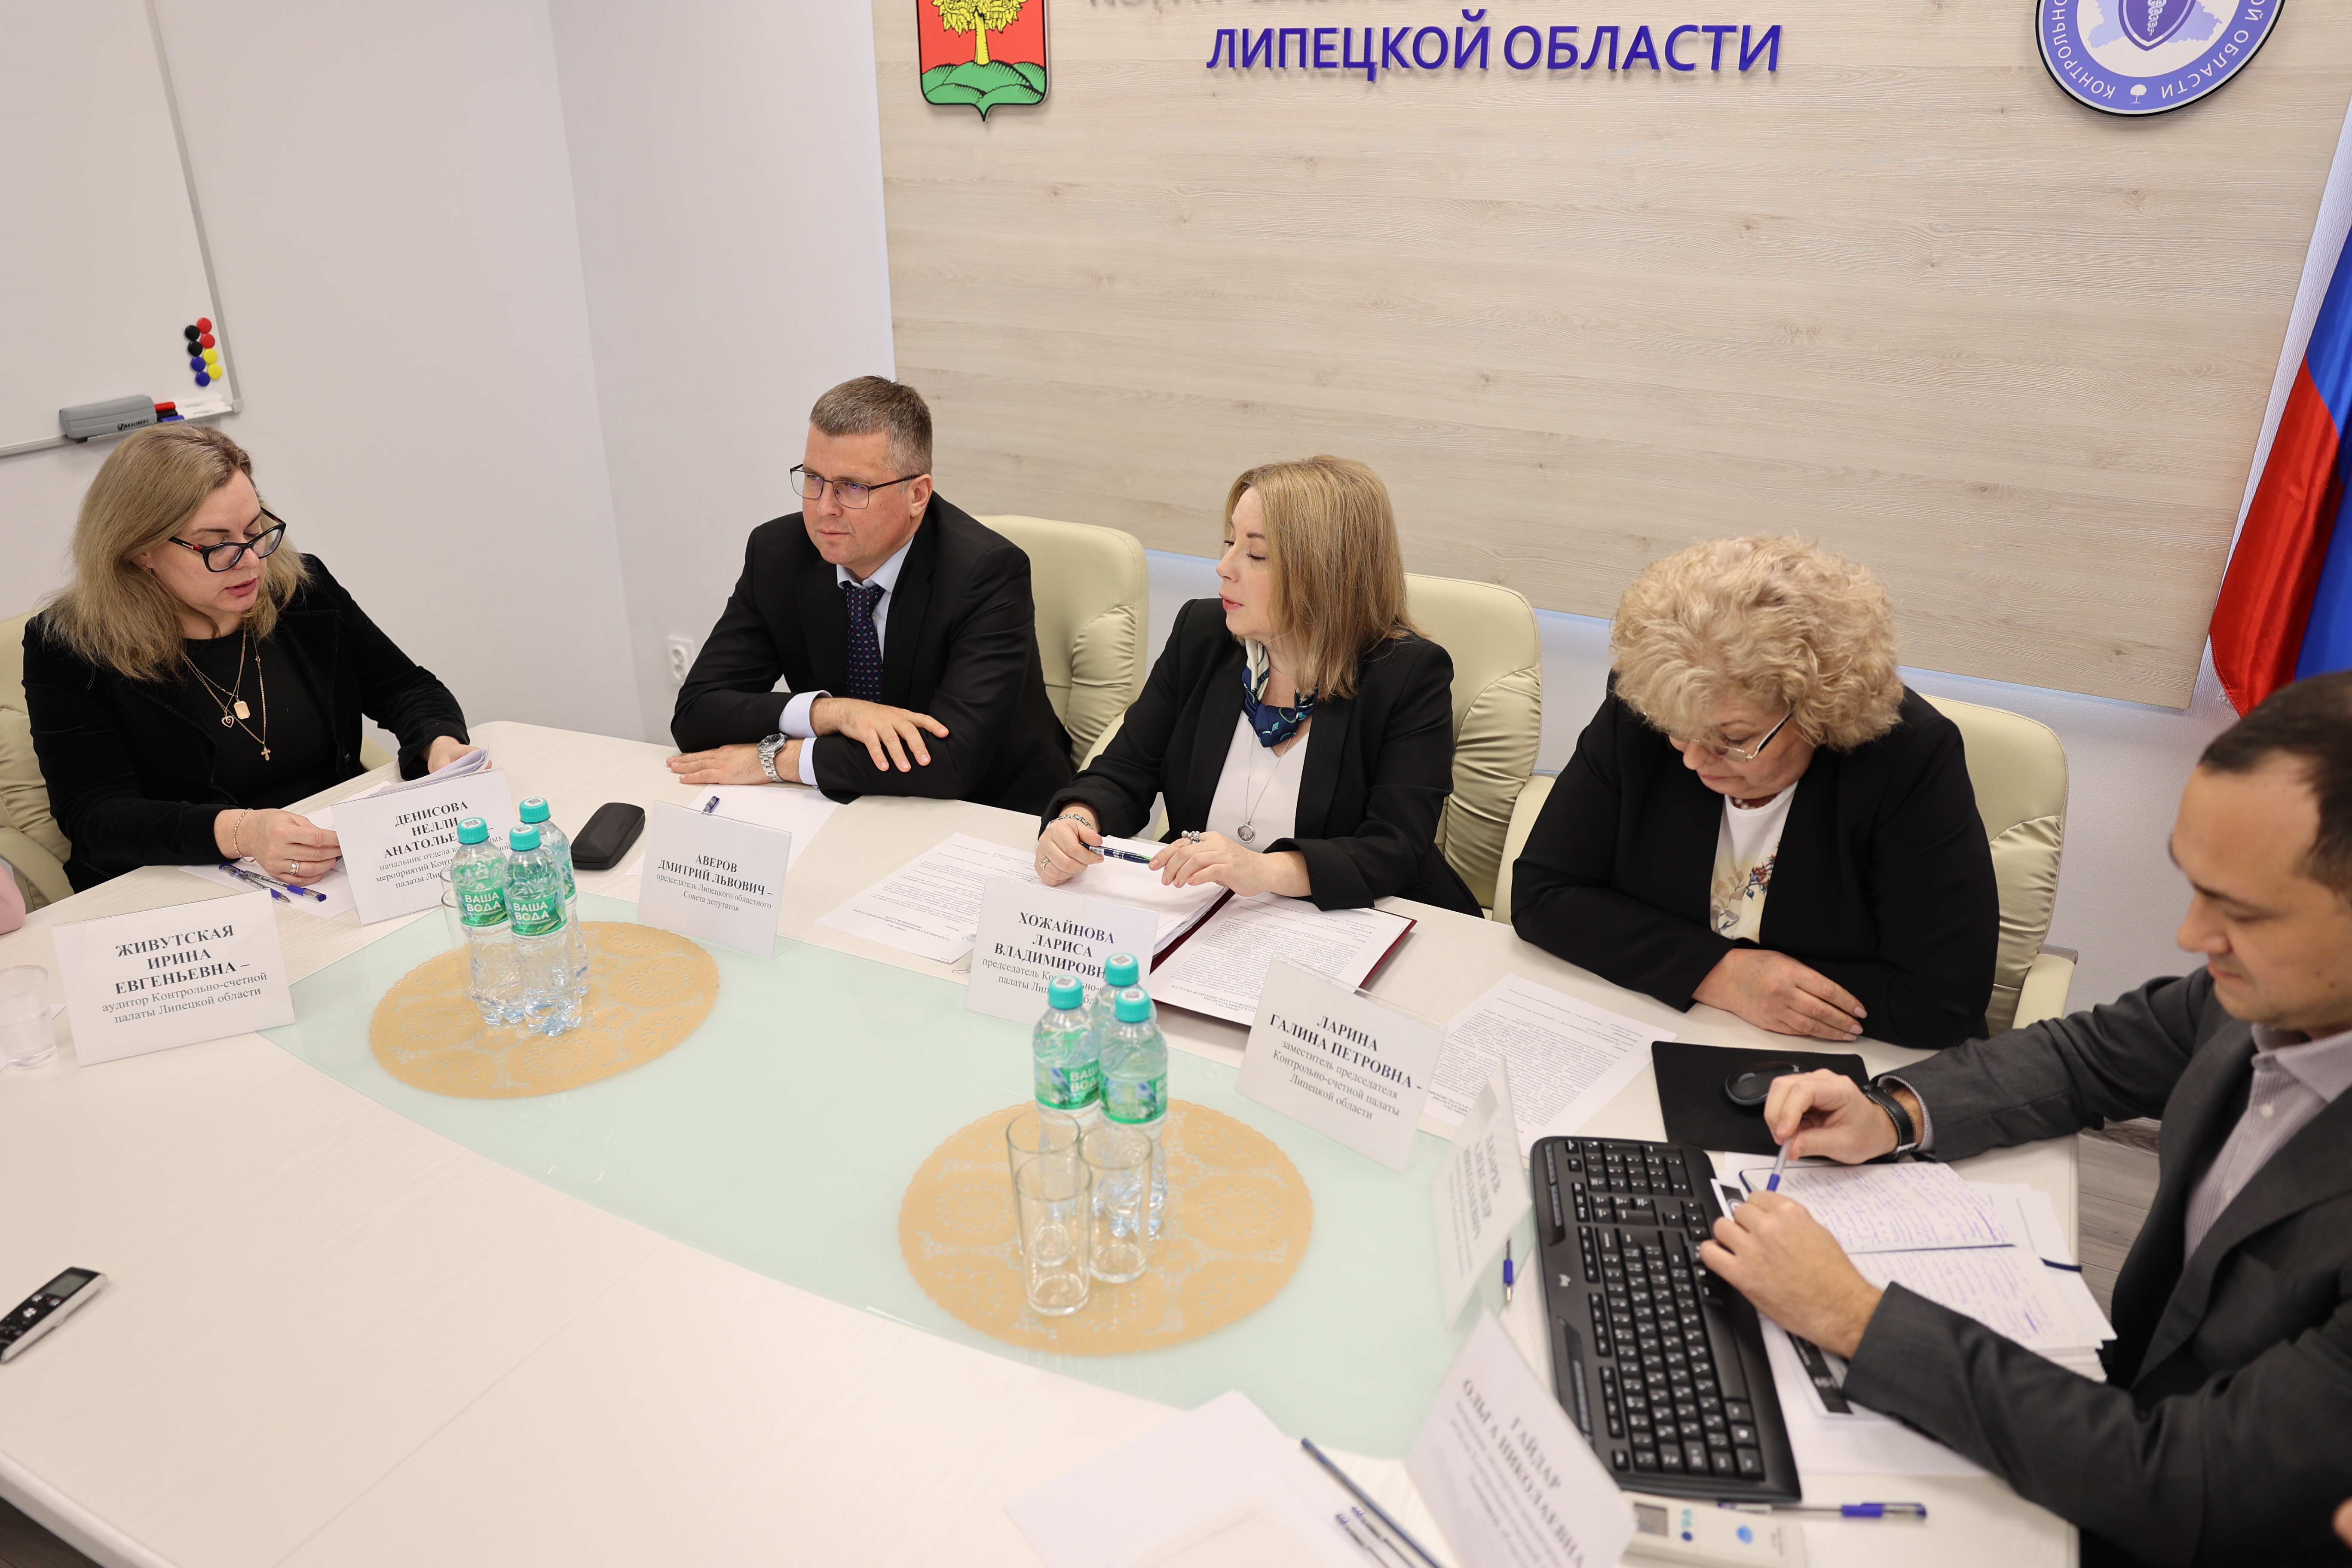 Итоговое заседание коллегии Контрольно-счетной палаты Липецкой области